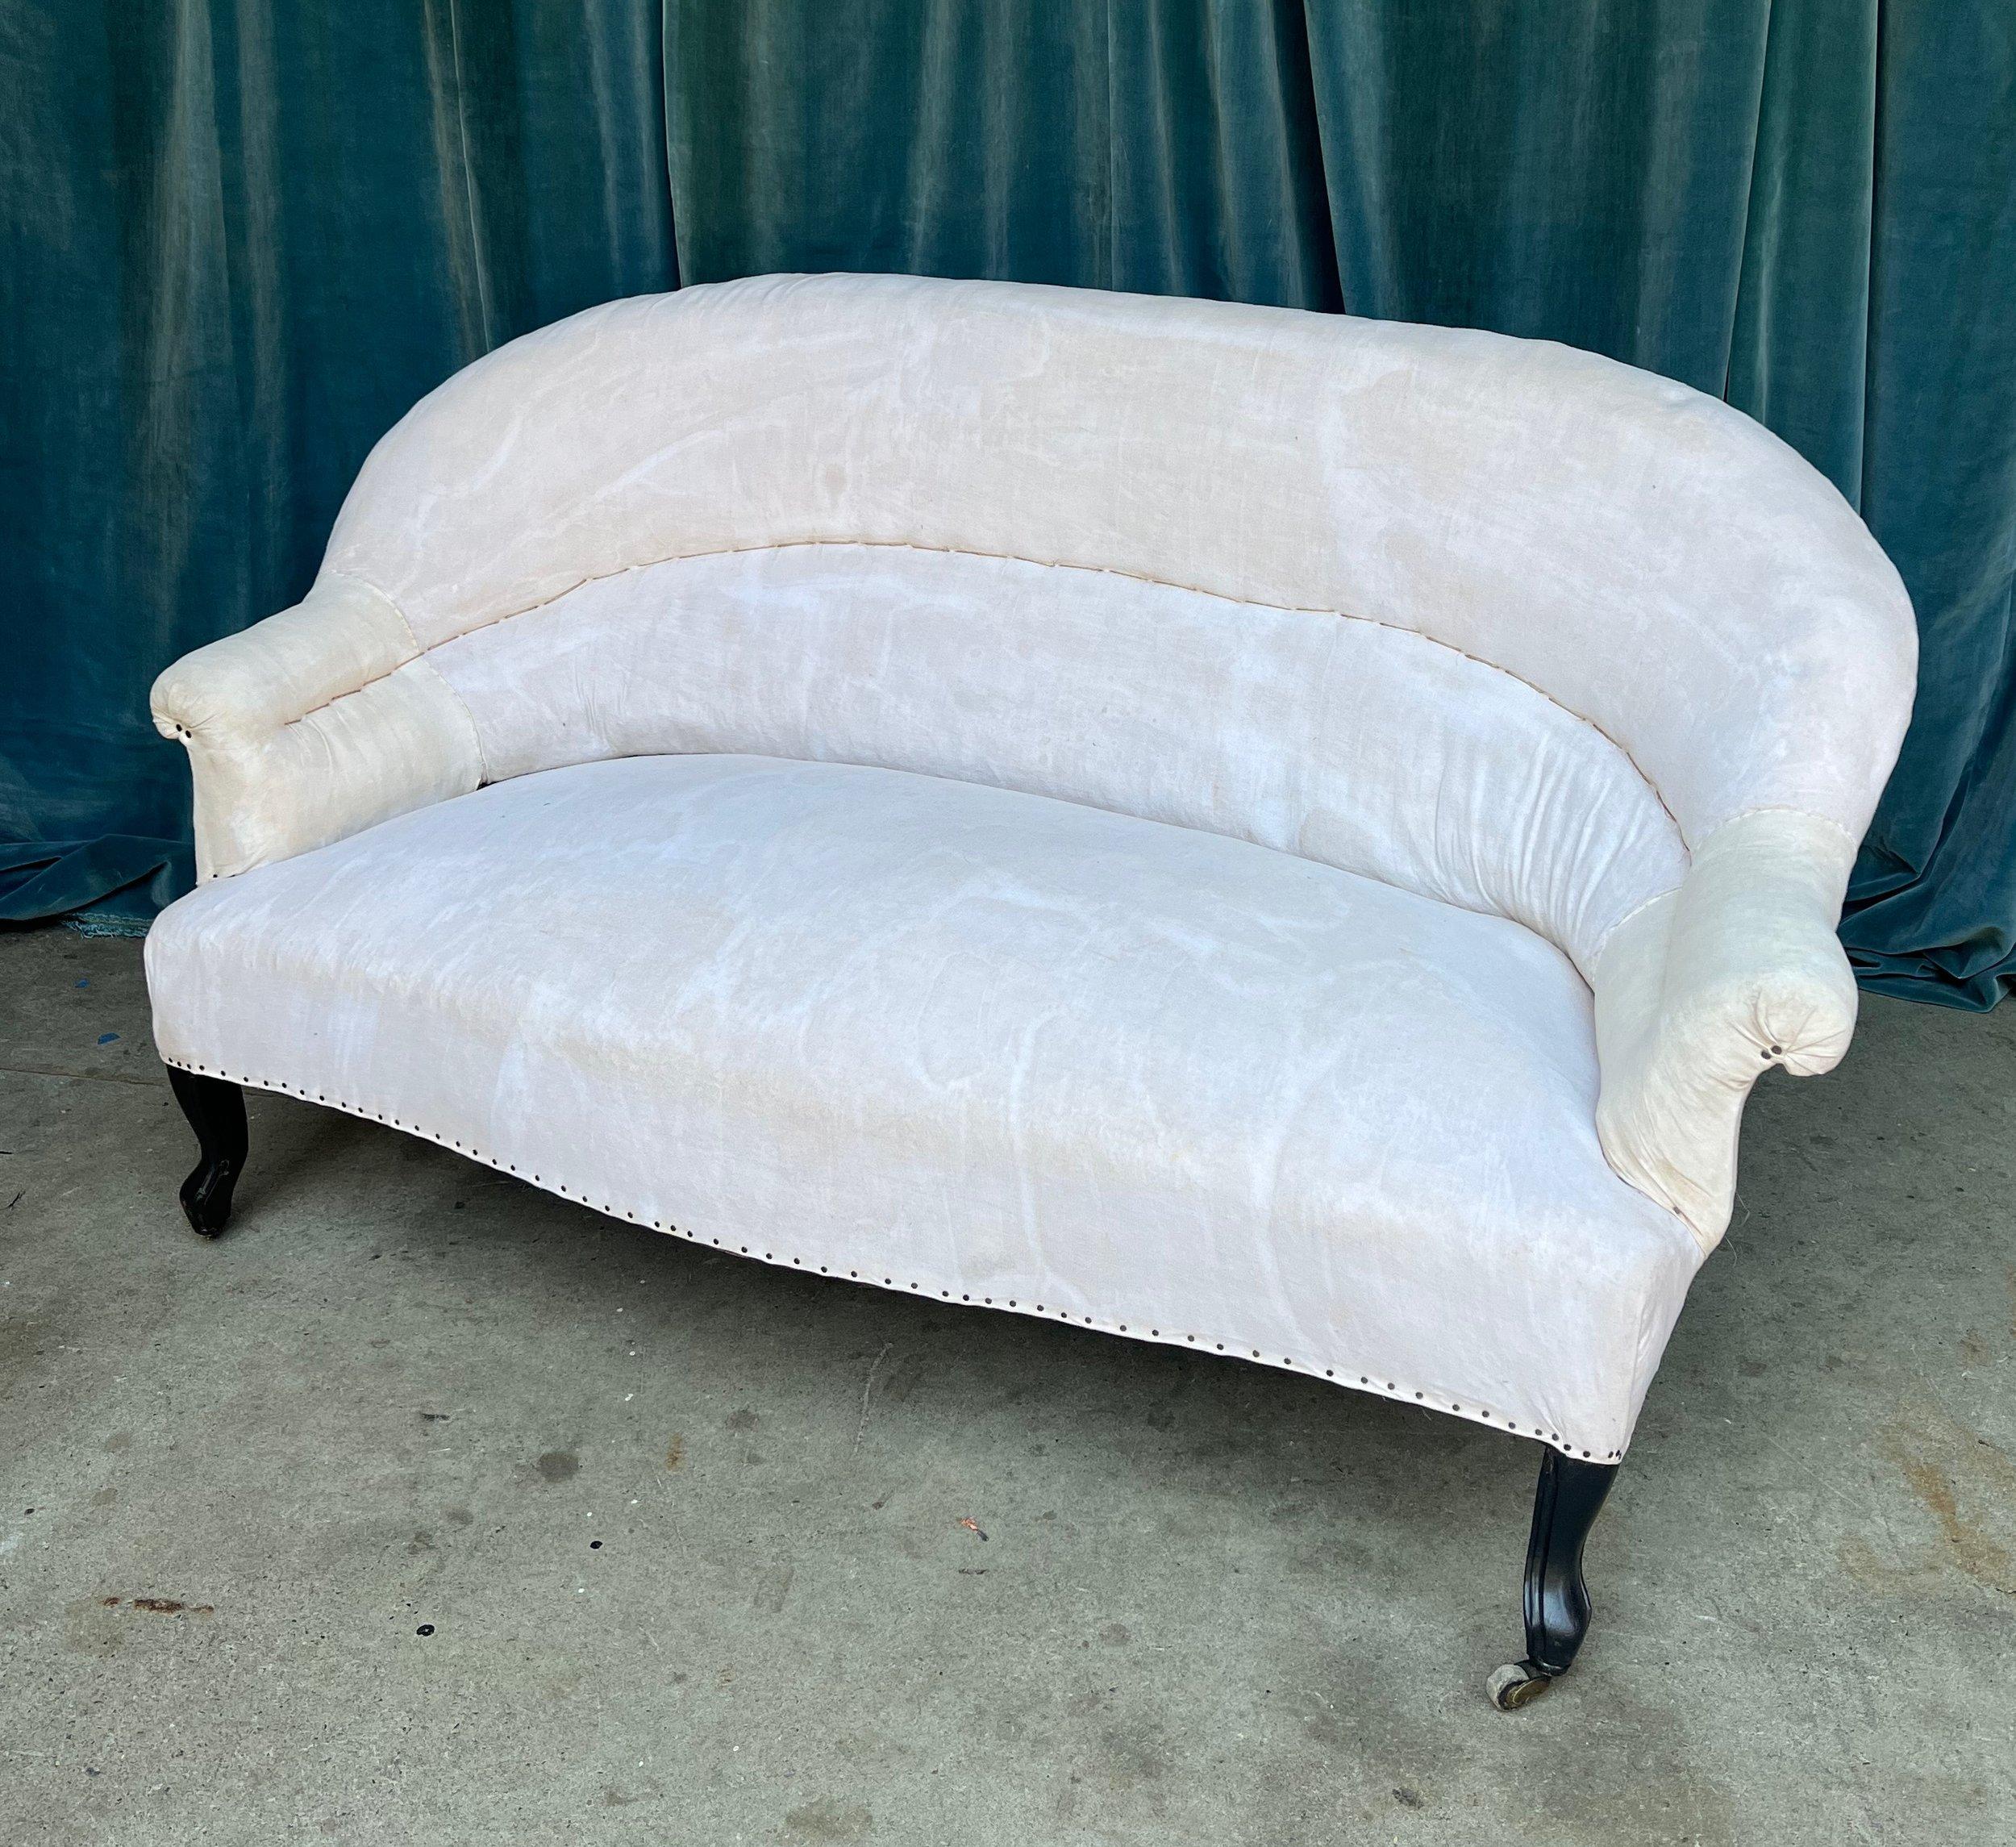 Elegantes französisches Sofa aus dem frühen 20. Jahrhundert in kleinem Maßstab im Stil von Napoleon III. Diese französische Couch ist ein zeitloses Möbelstück, das klassische Eleganz verkörpert. Die anmutig geschwungene Rückenlehne mit integrierter